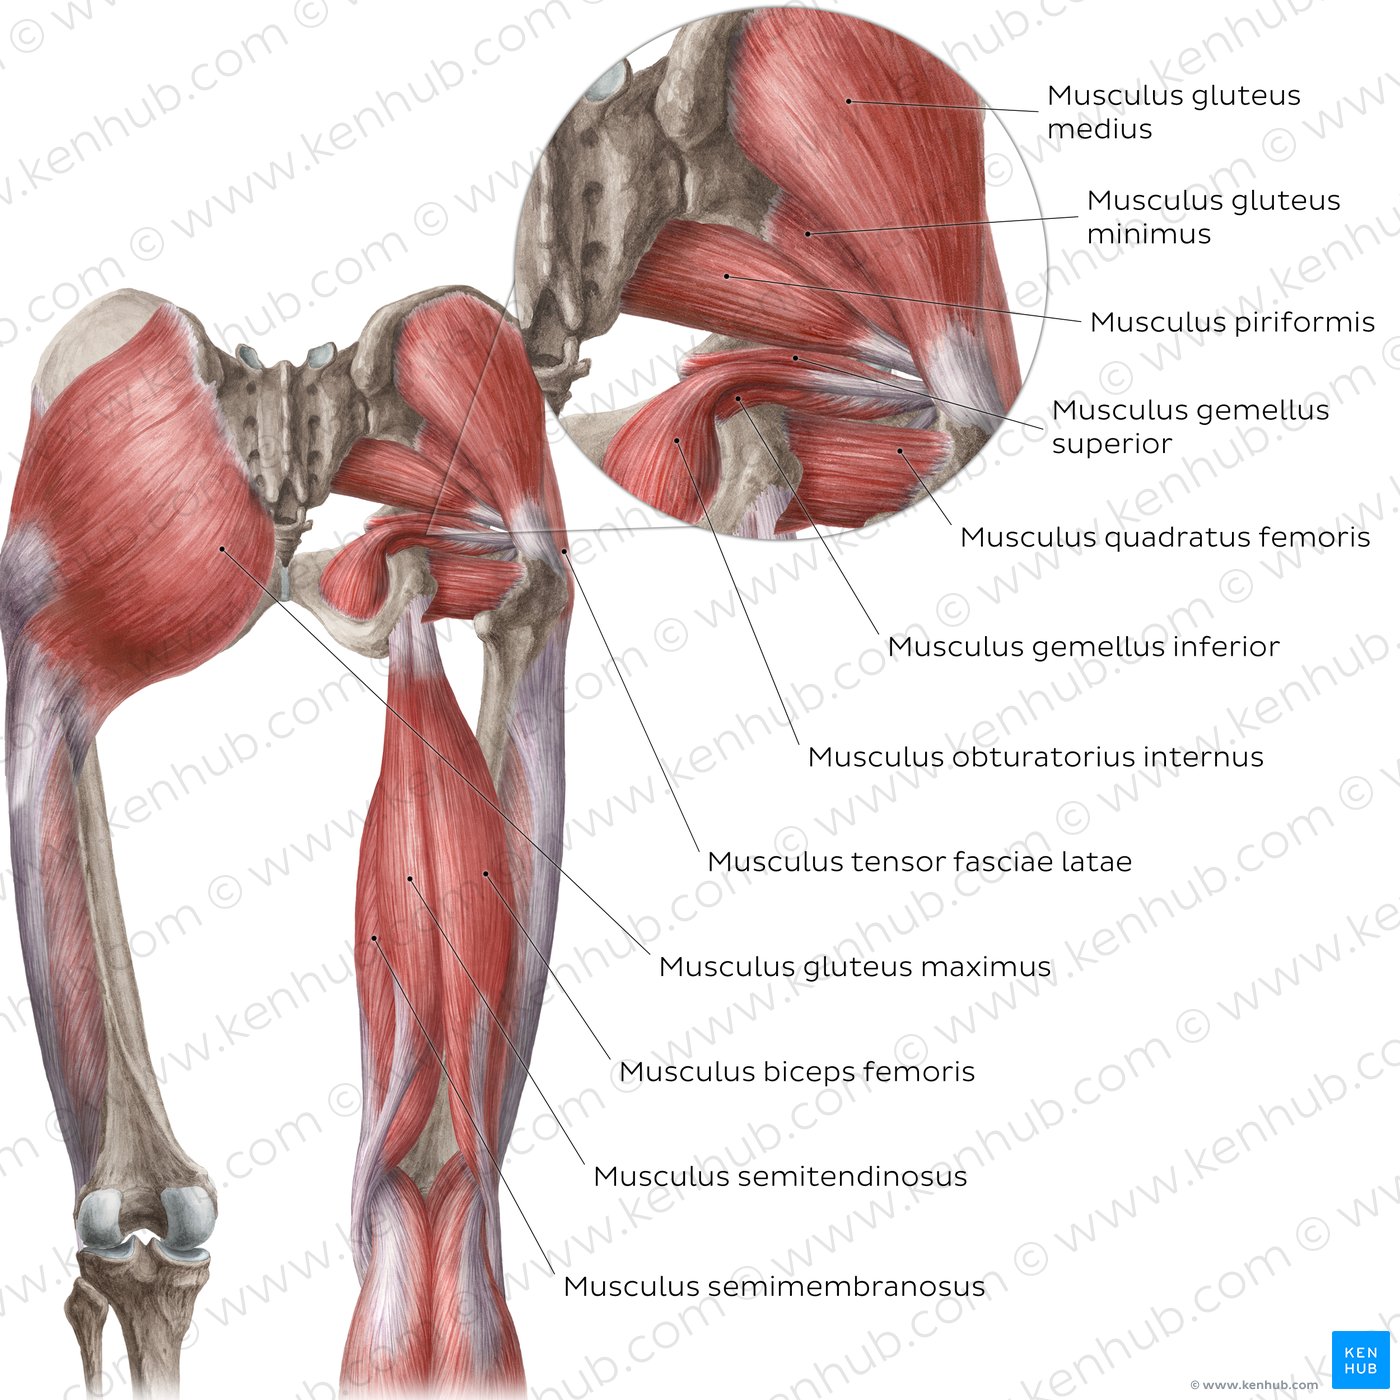 Musculus biceps femoris: Anatomie, Funktion & Versorgung | Kenhub